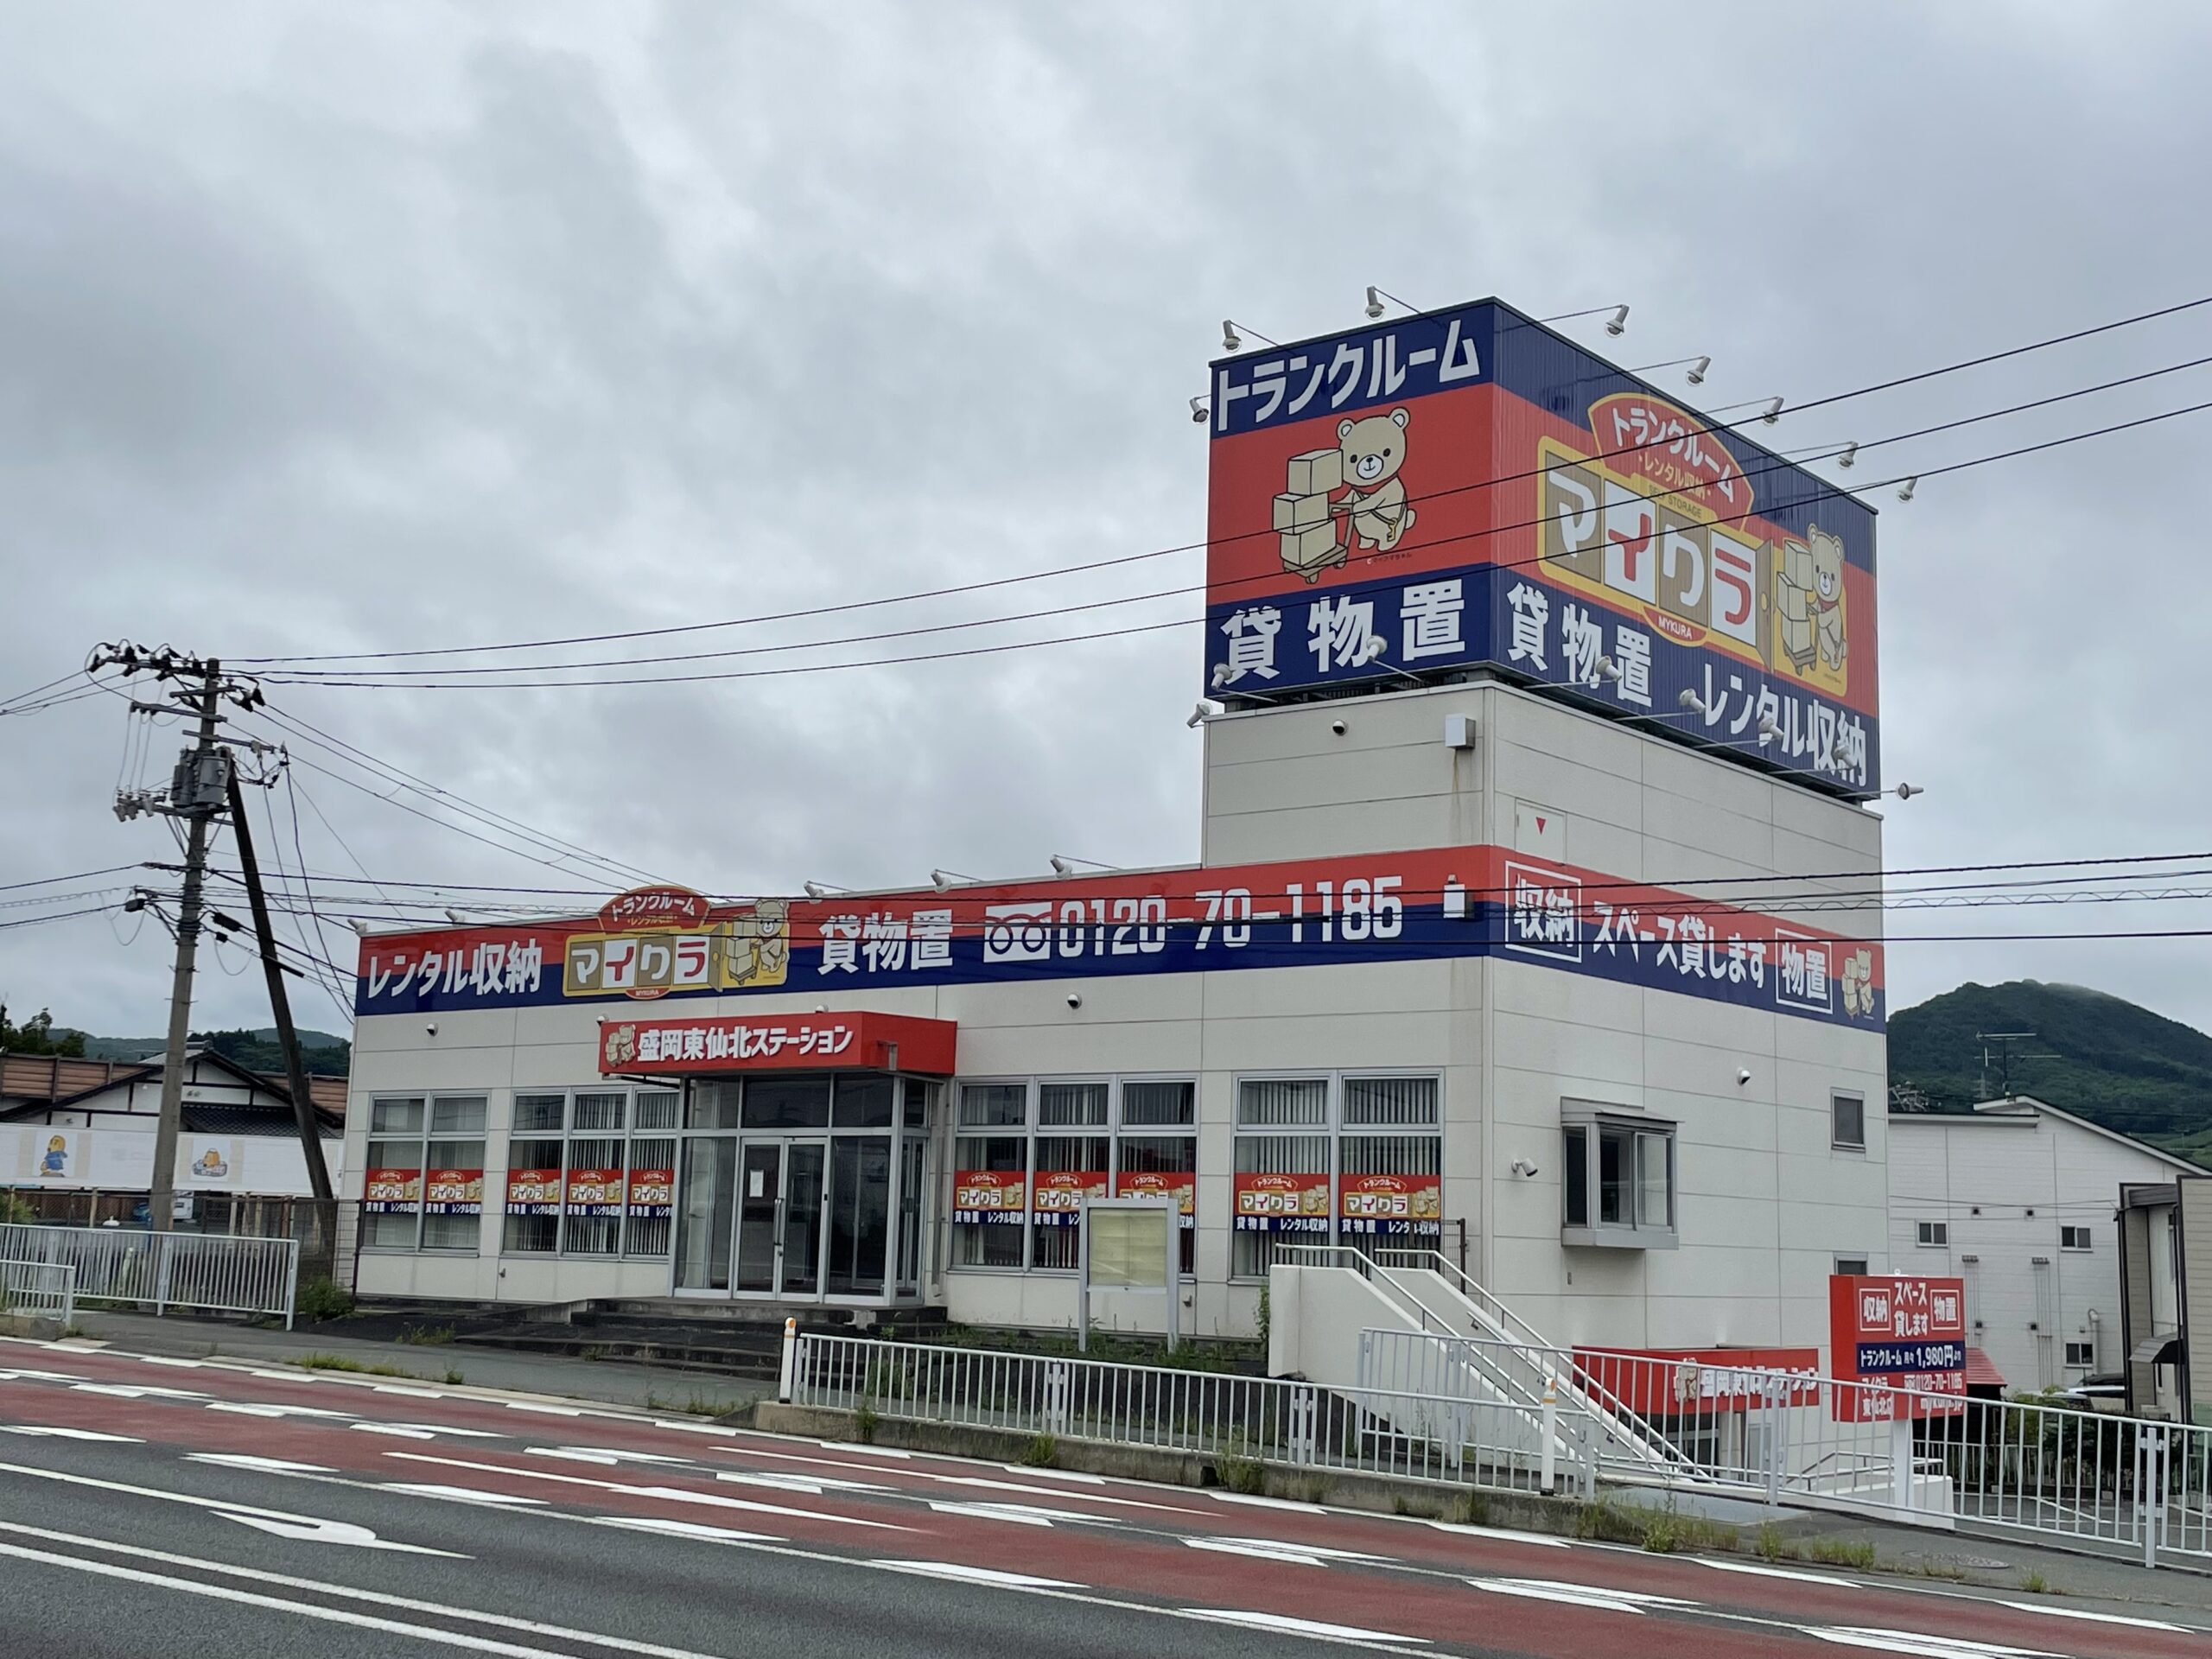 トランクルーム・レンタル収納のマイクラ東仙北店